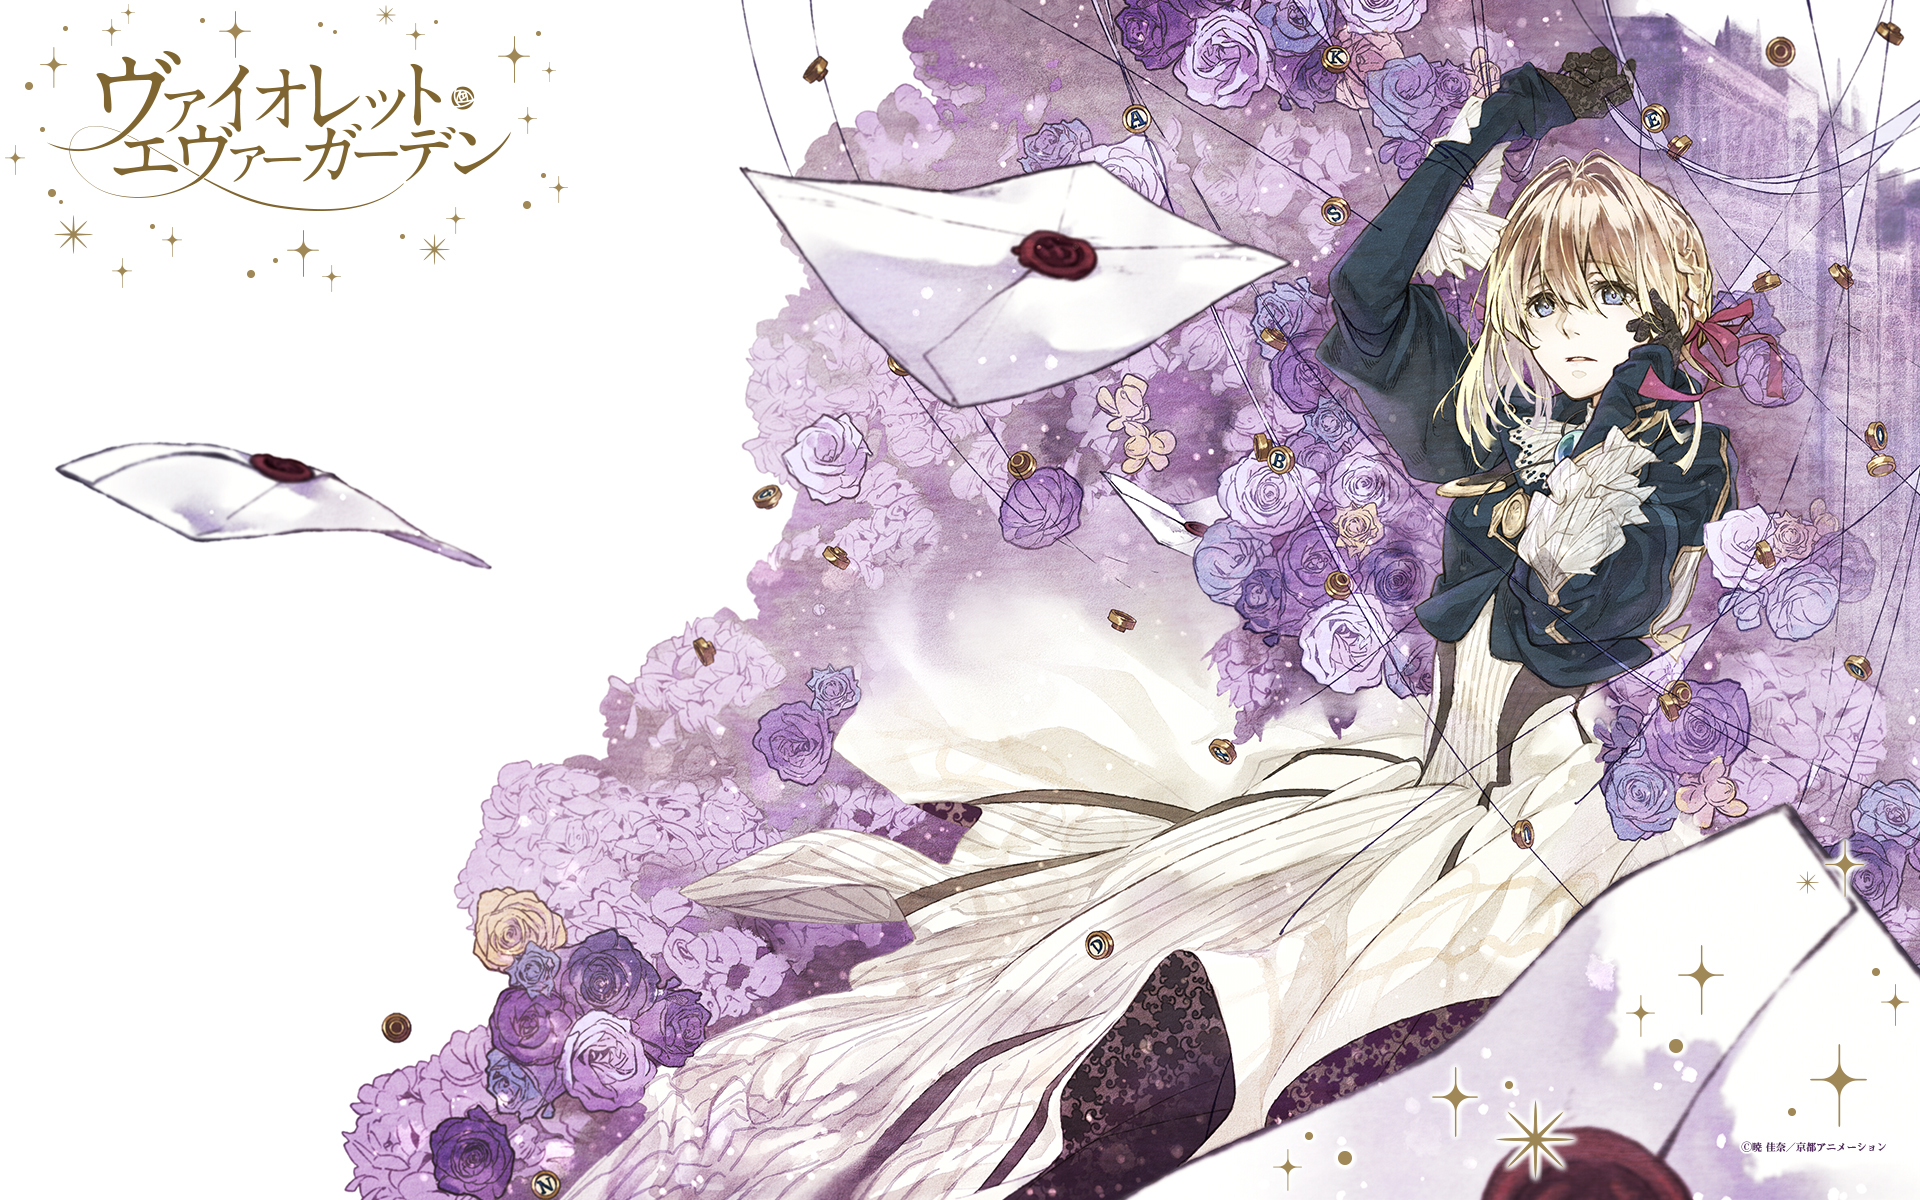 Mua Wonderful Life A Violet Evergarden Poster  Anime Poster Metal Poster  12 x 8 inch 30x20cm trên Amazon Mỹ chính hãng 2023  Giaonhan247